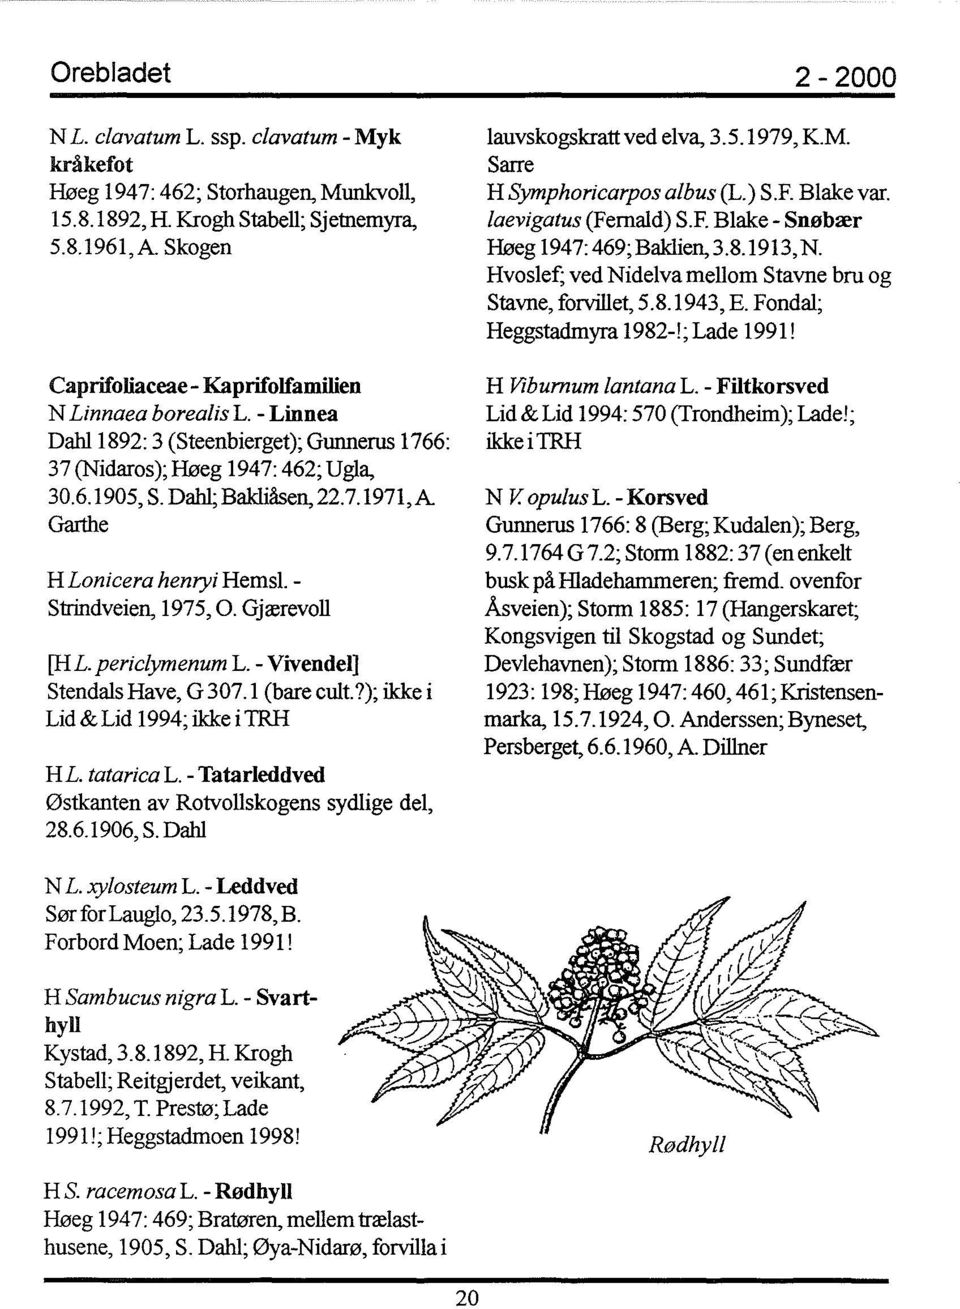 Gjærevoll [HL. periclymenum L. - Vivendel] Stendals Have, G 307.1 (bare cult.?); ikke i Lid & Lid 1994; ikke i TRH HL. tatariea L. - Tatarleddved østkanten av Rotvollskogens sydlige del, 28.6.1906, S.